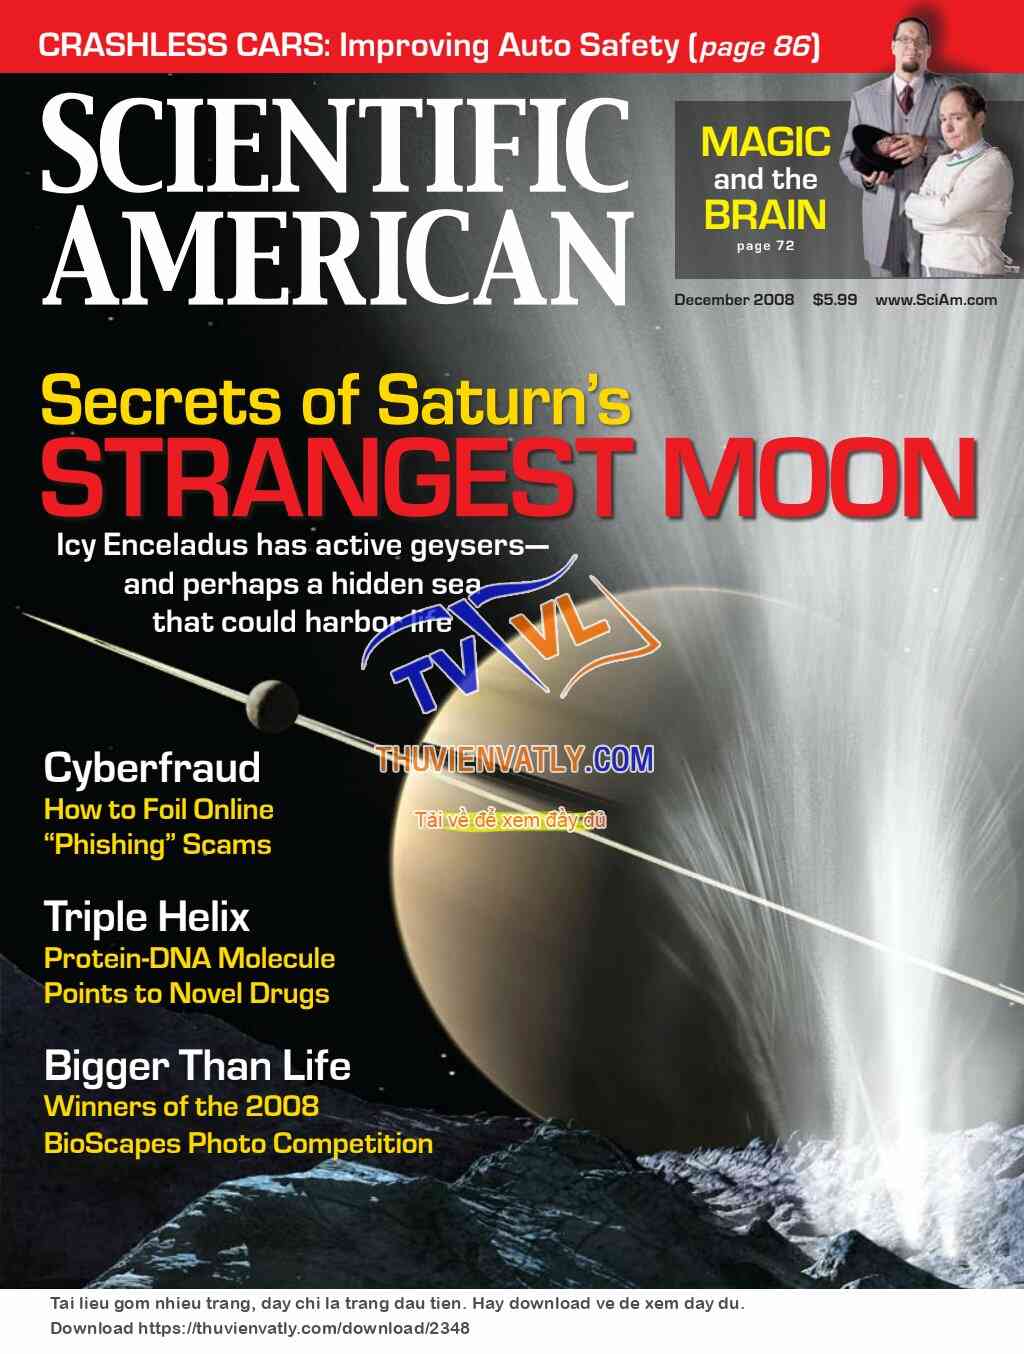 Tạp chí Scientific American, số tháng 12/2008 !!